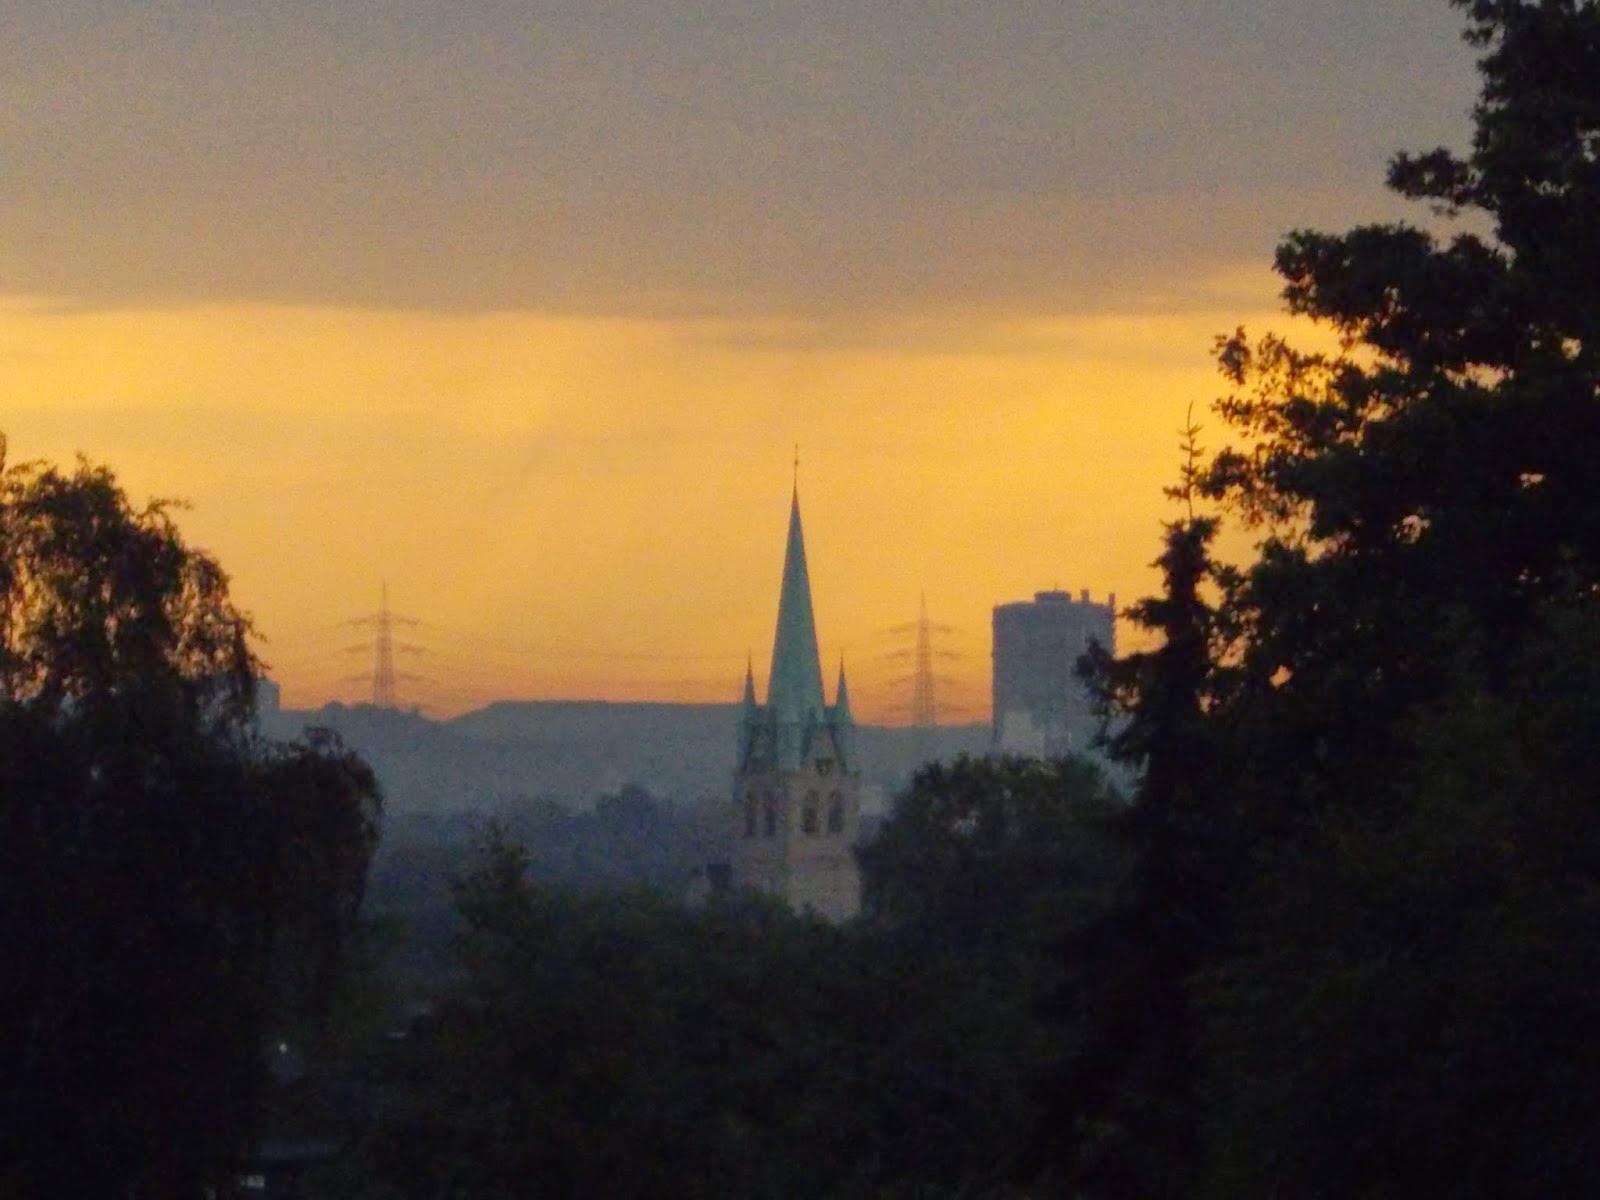 Auch unter dem gewittrigen Himmel am 20 Juni 2013 macht der hohe schlanke Turm von St Michael durchaus einen imposanten Eindruck